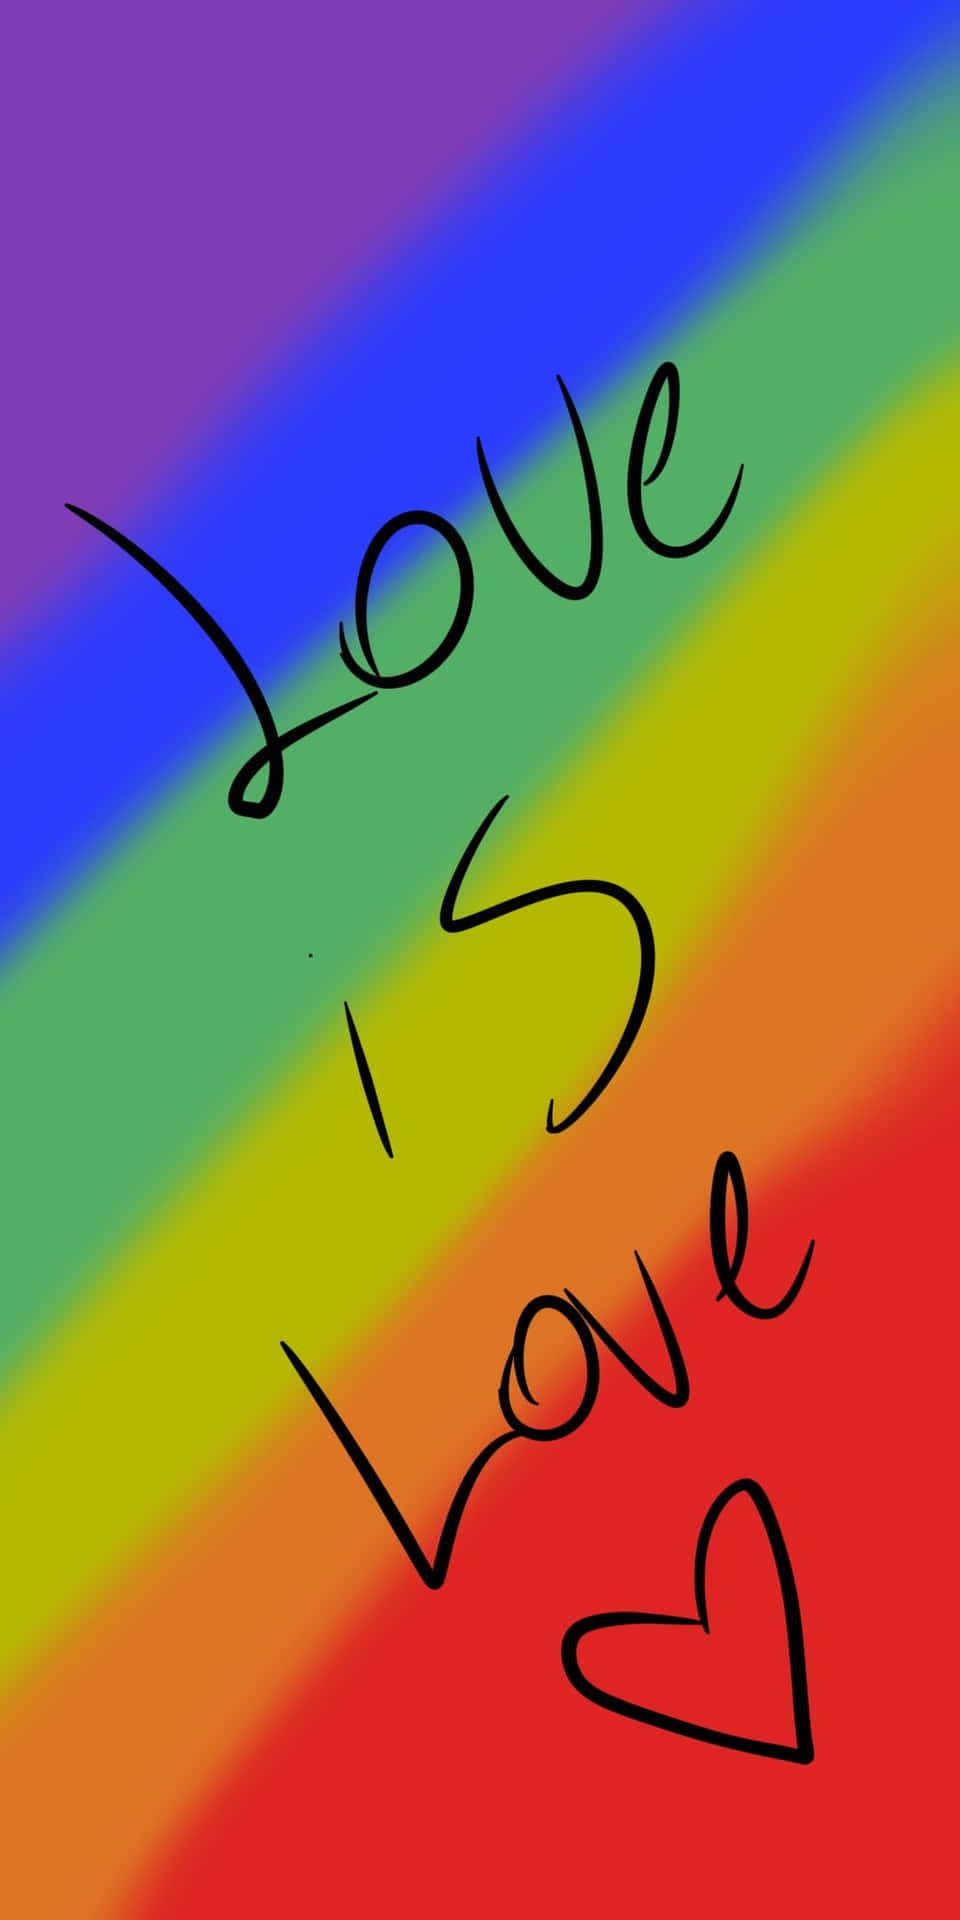 En regnbuefarvet iphone til støtte for LGBT + rettigheder. Wallpaper